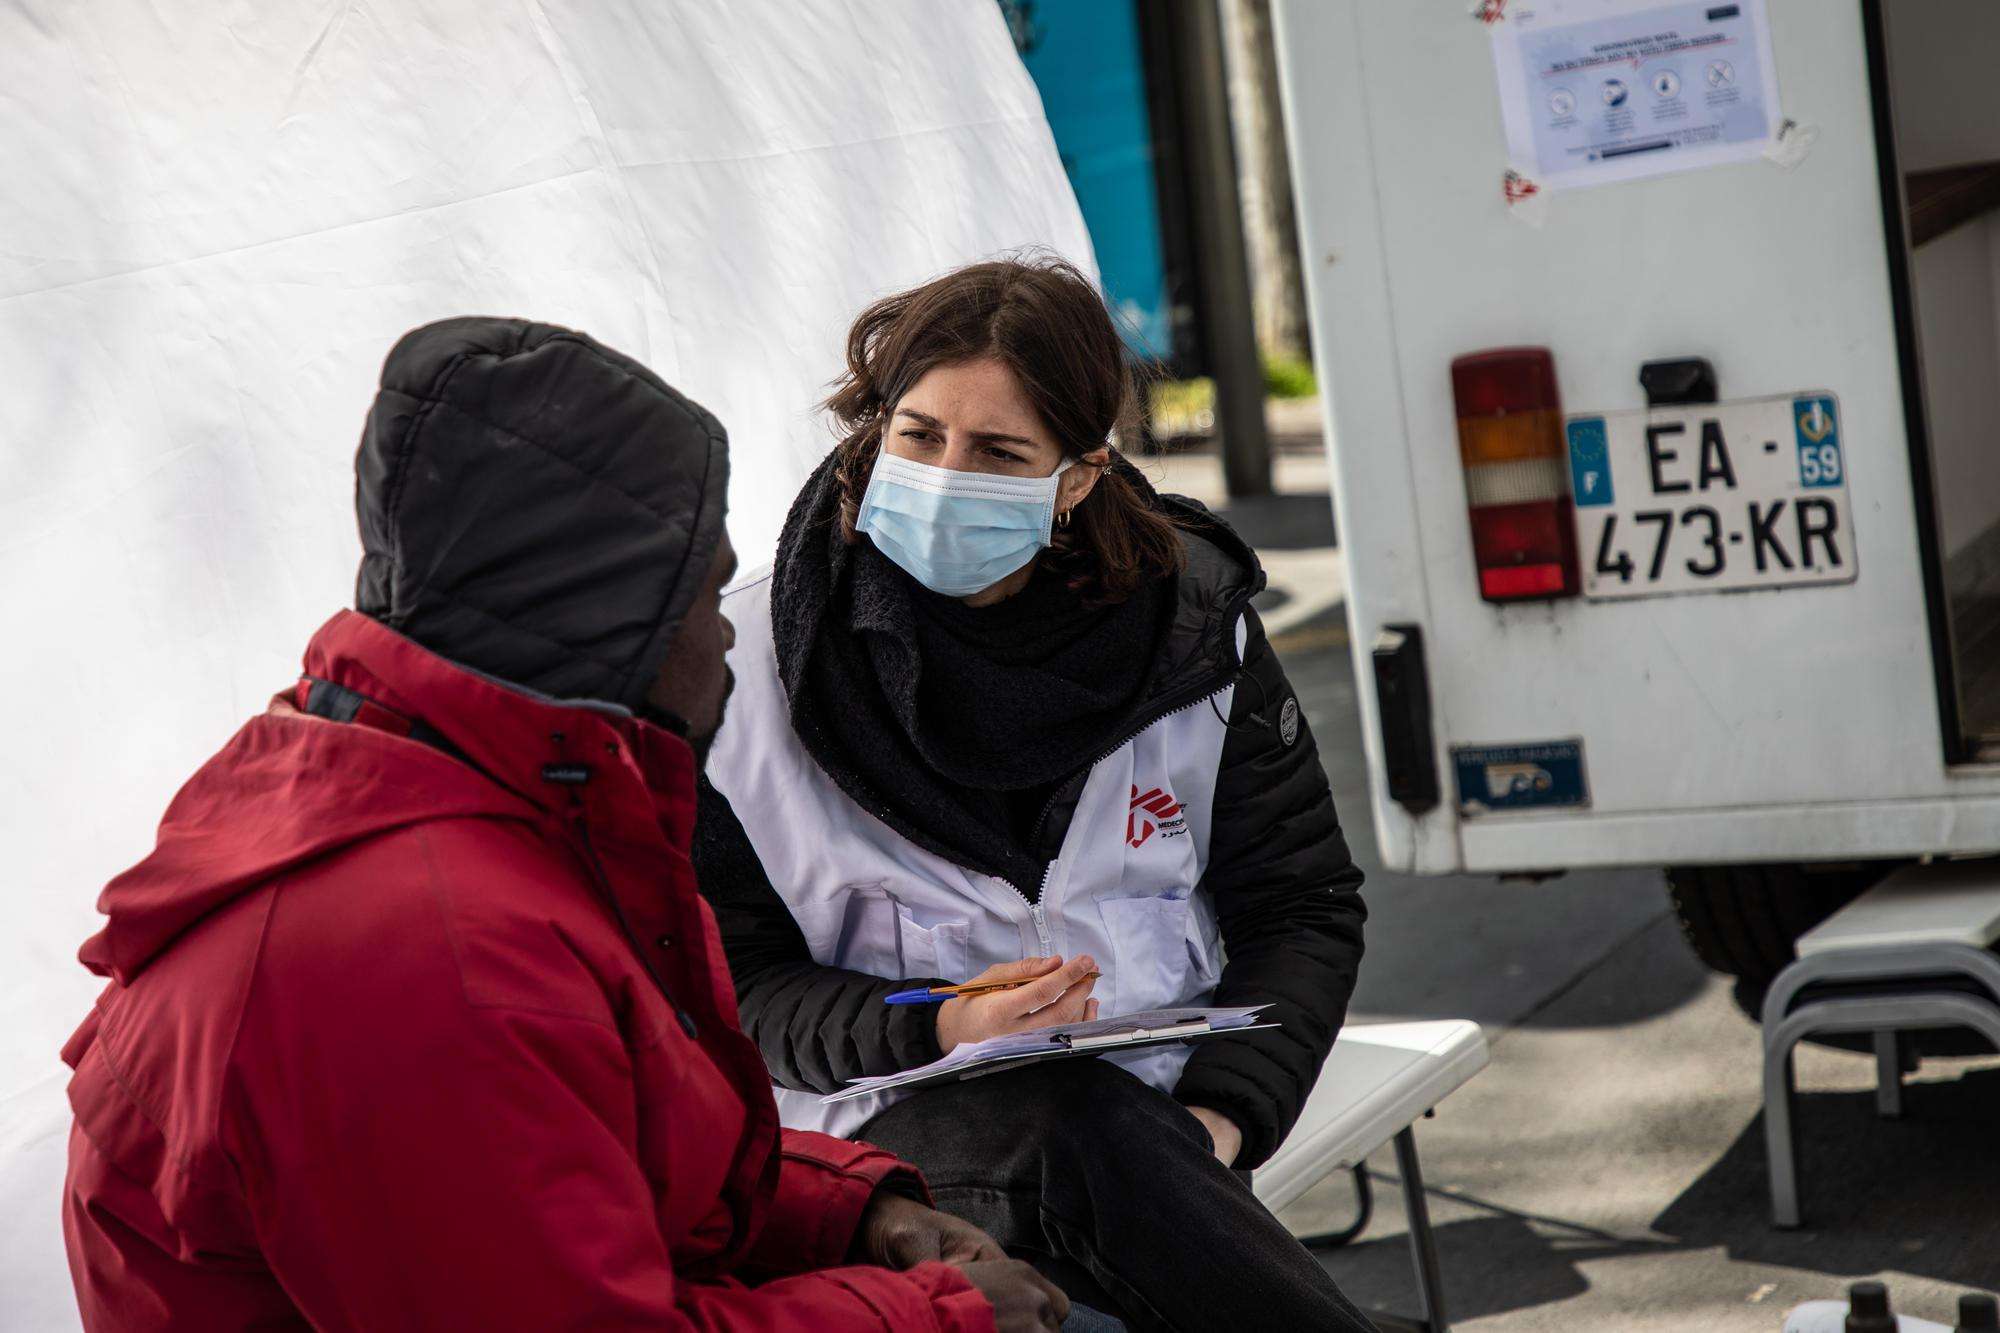 Coronavirus: MSF's mobile clinic for vulnerable groups